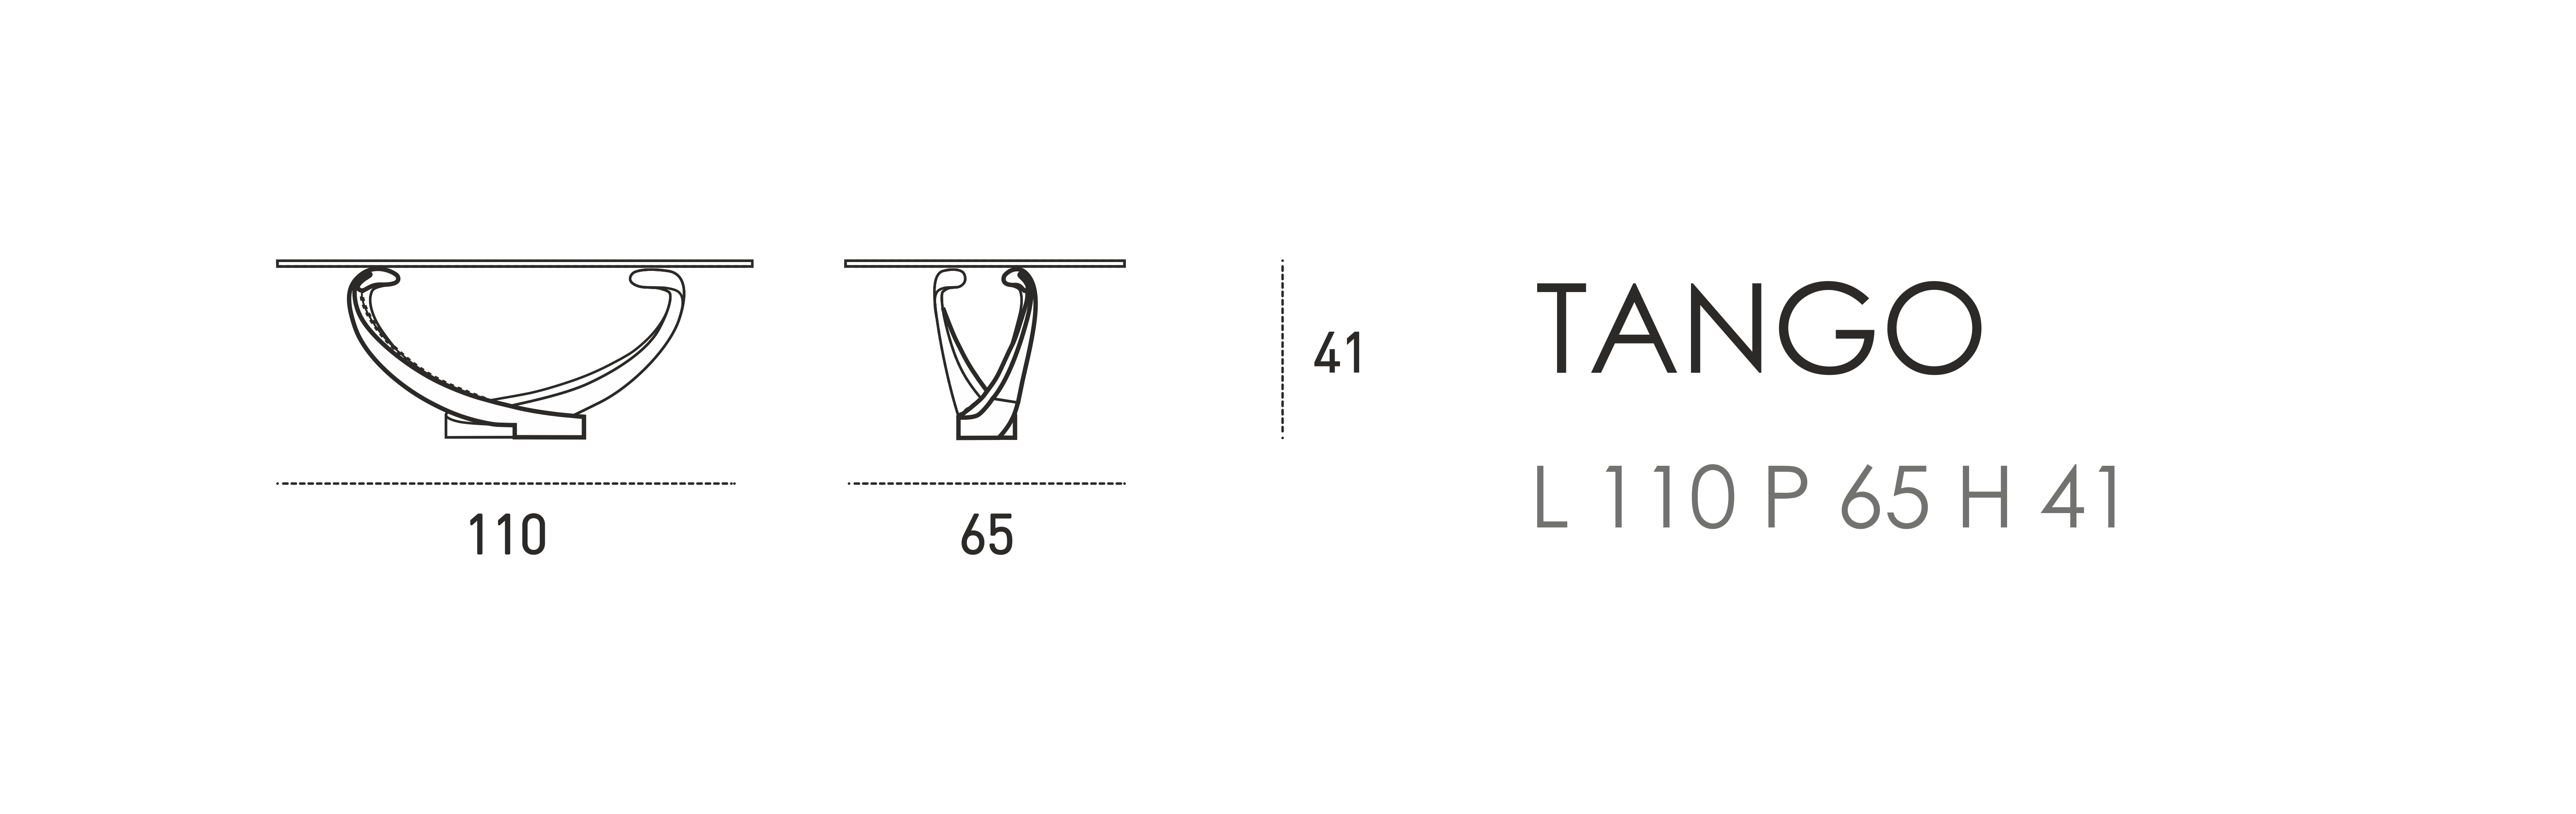 Tango L 110 P 65 H 41